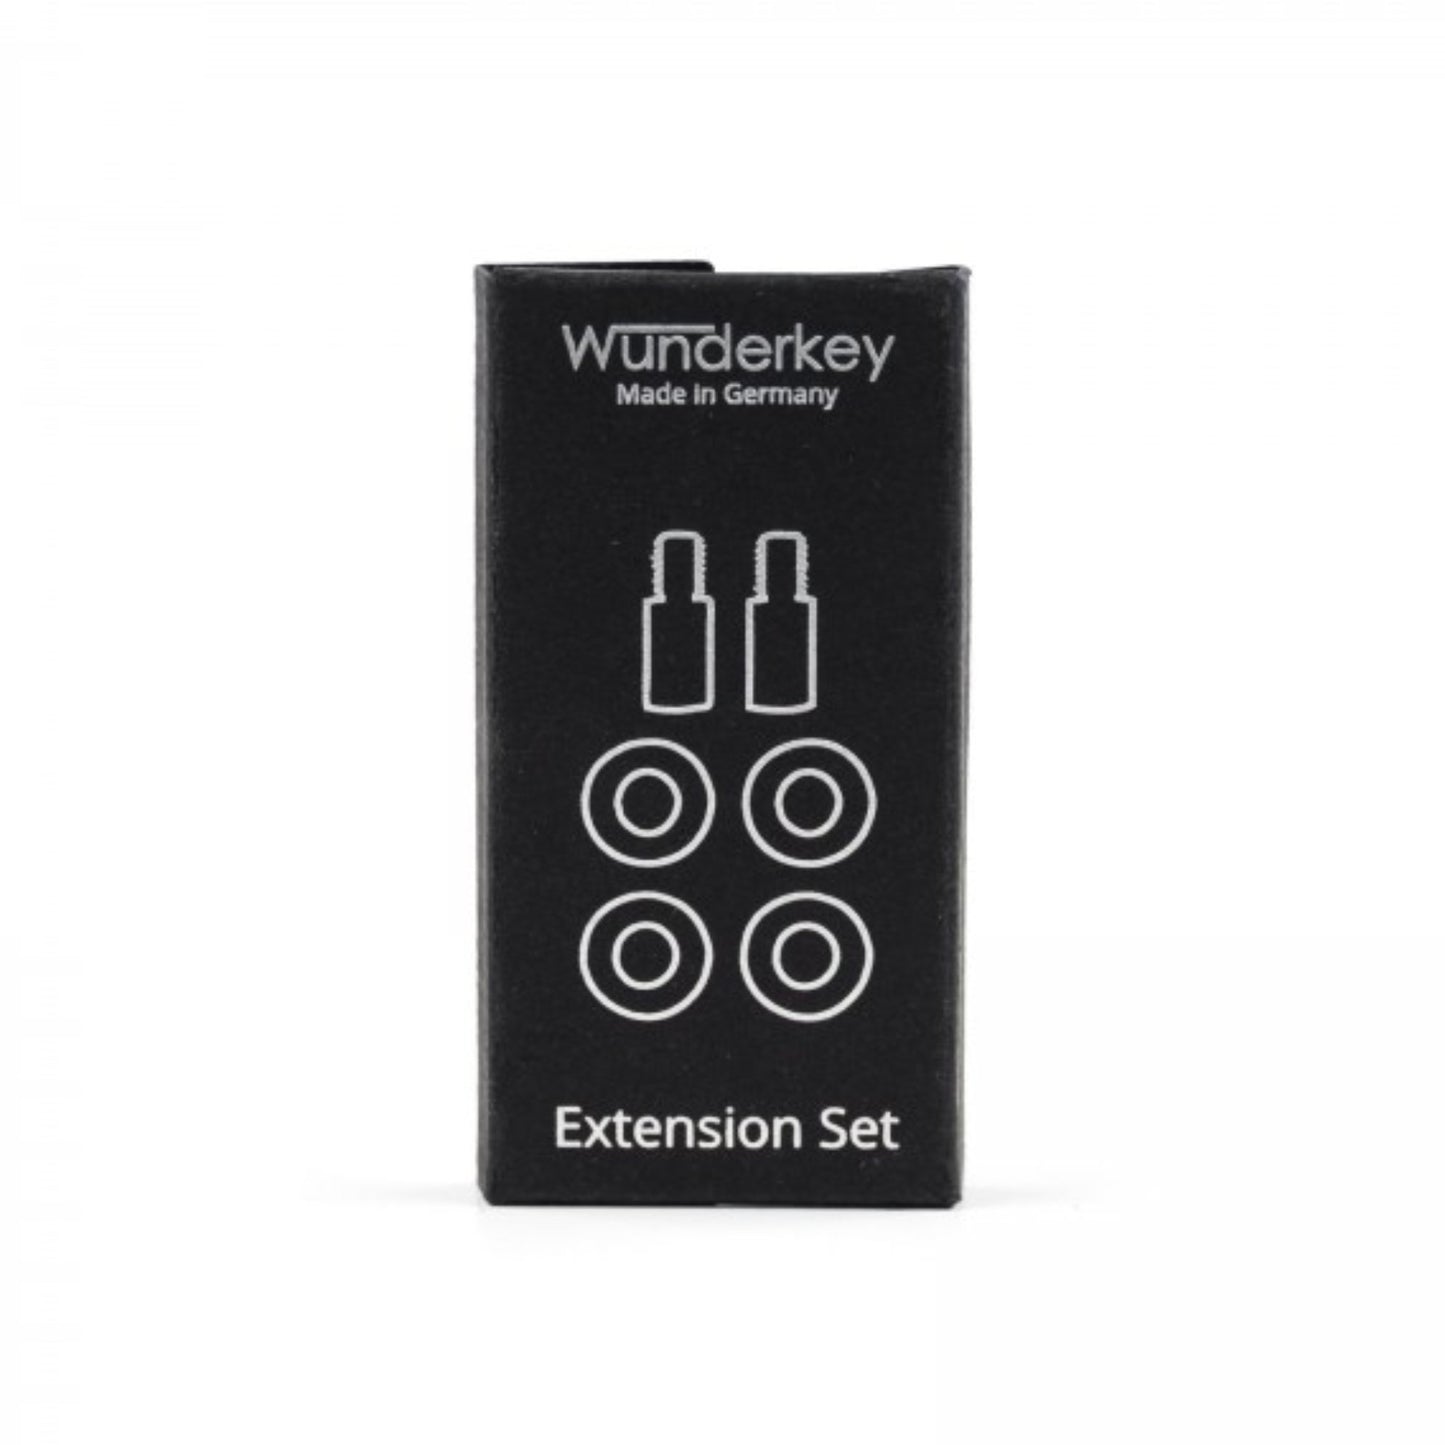 Wunderkey Extension Set